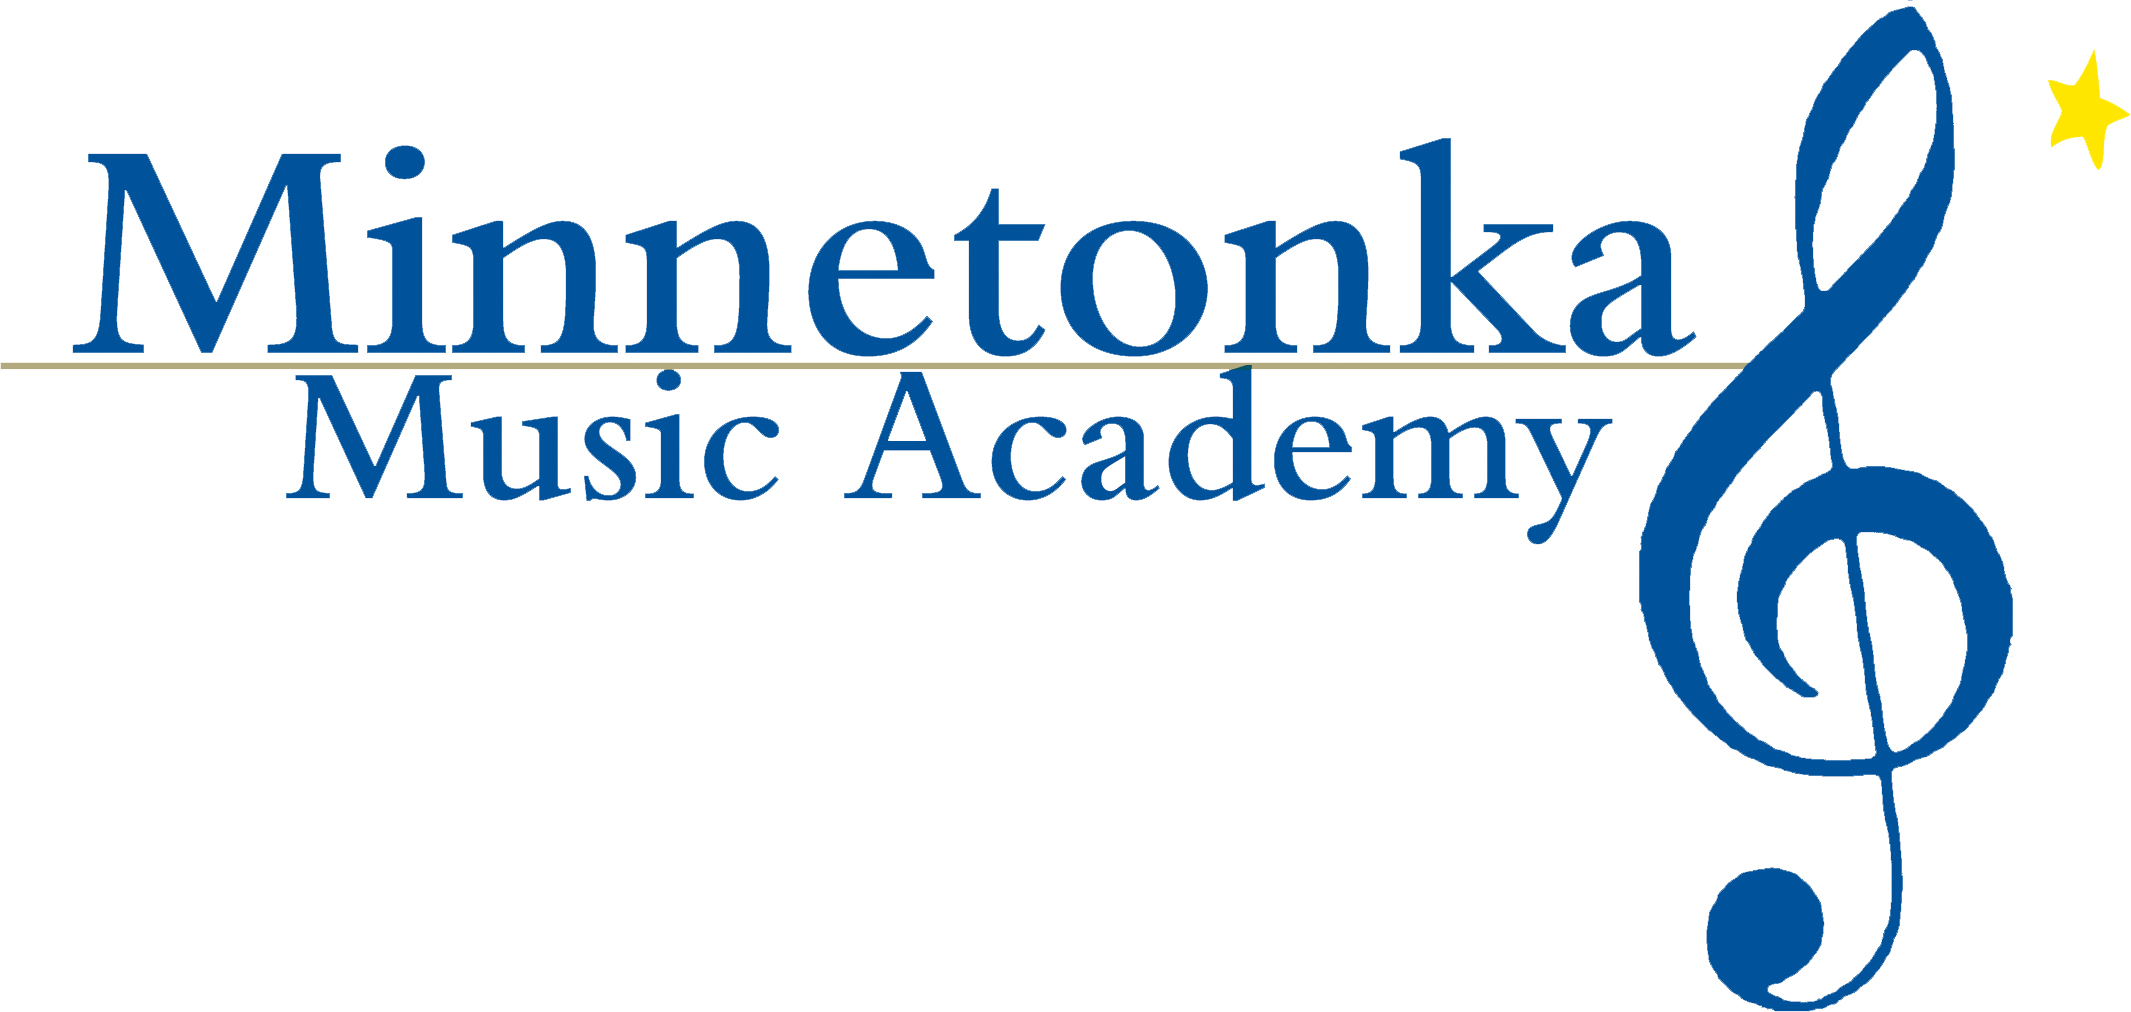 ឡូយកប់ Academy តន្ត្រី Minnetonka